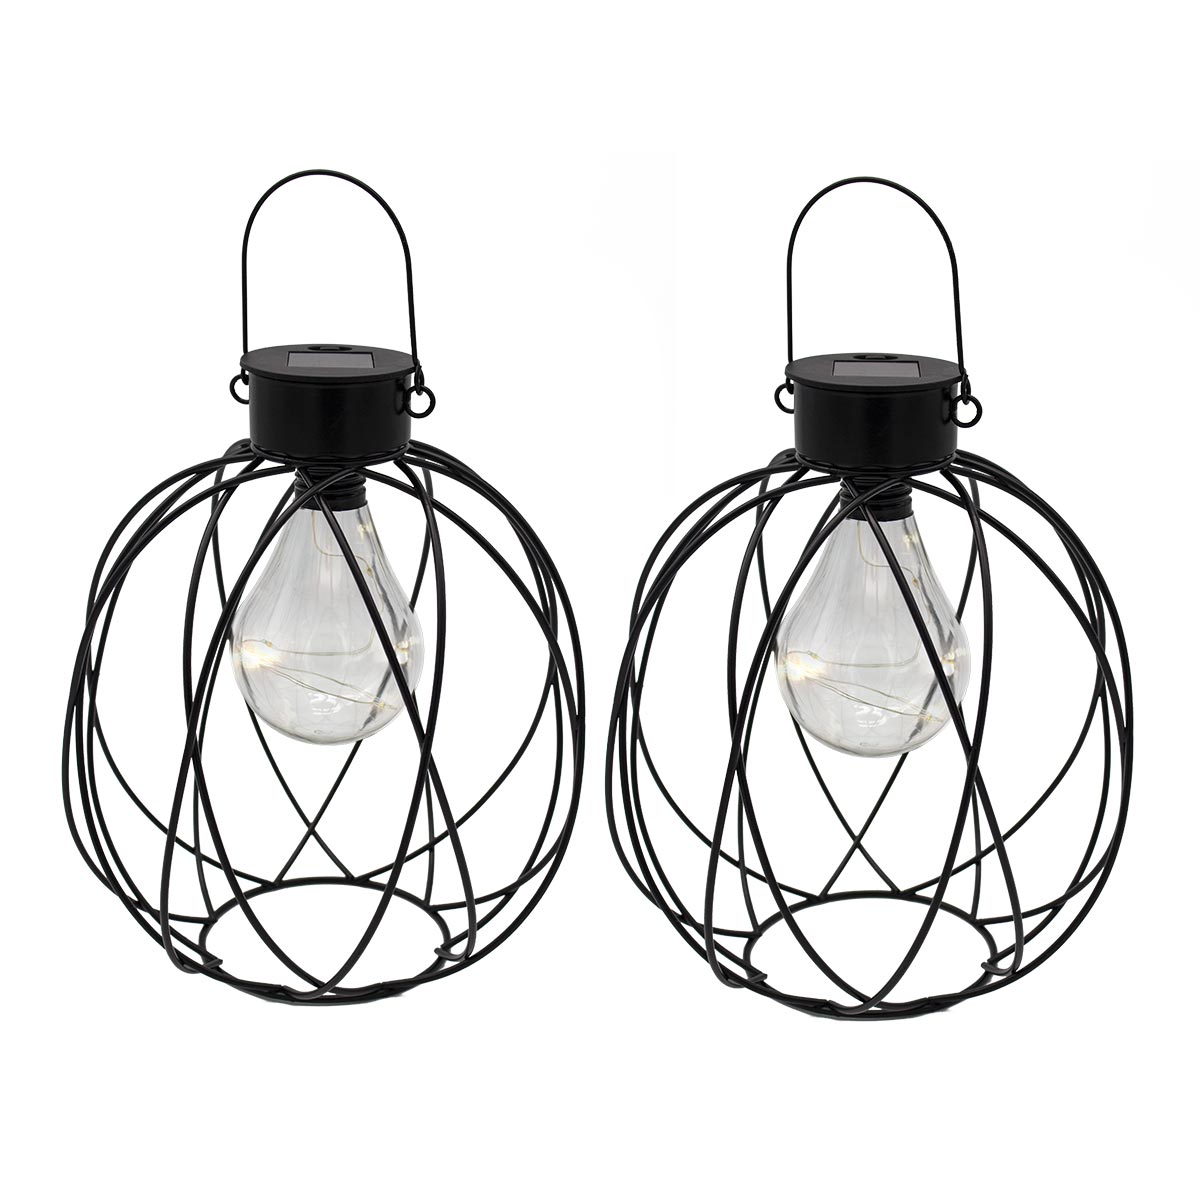 Lot de 2 lanternes solaires à poser ou à suspendre ampoule micro LED blanc chaud VENUS H24cm - REDDECO.com